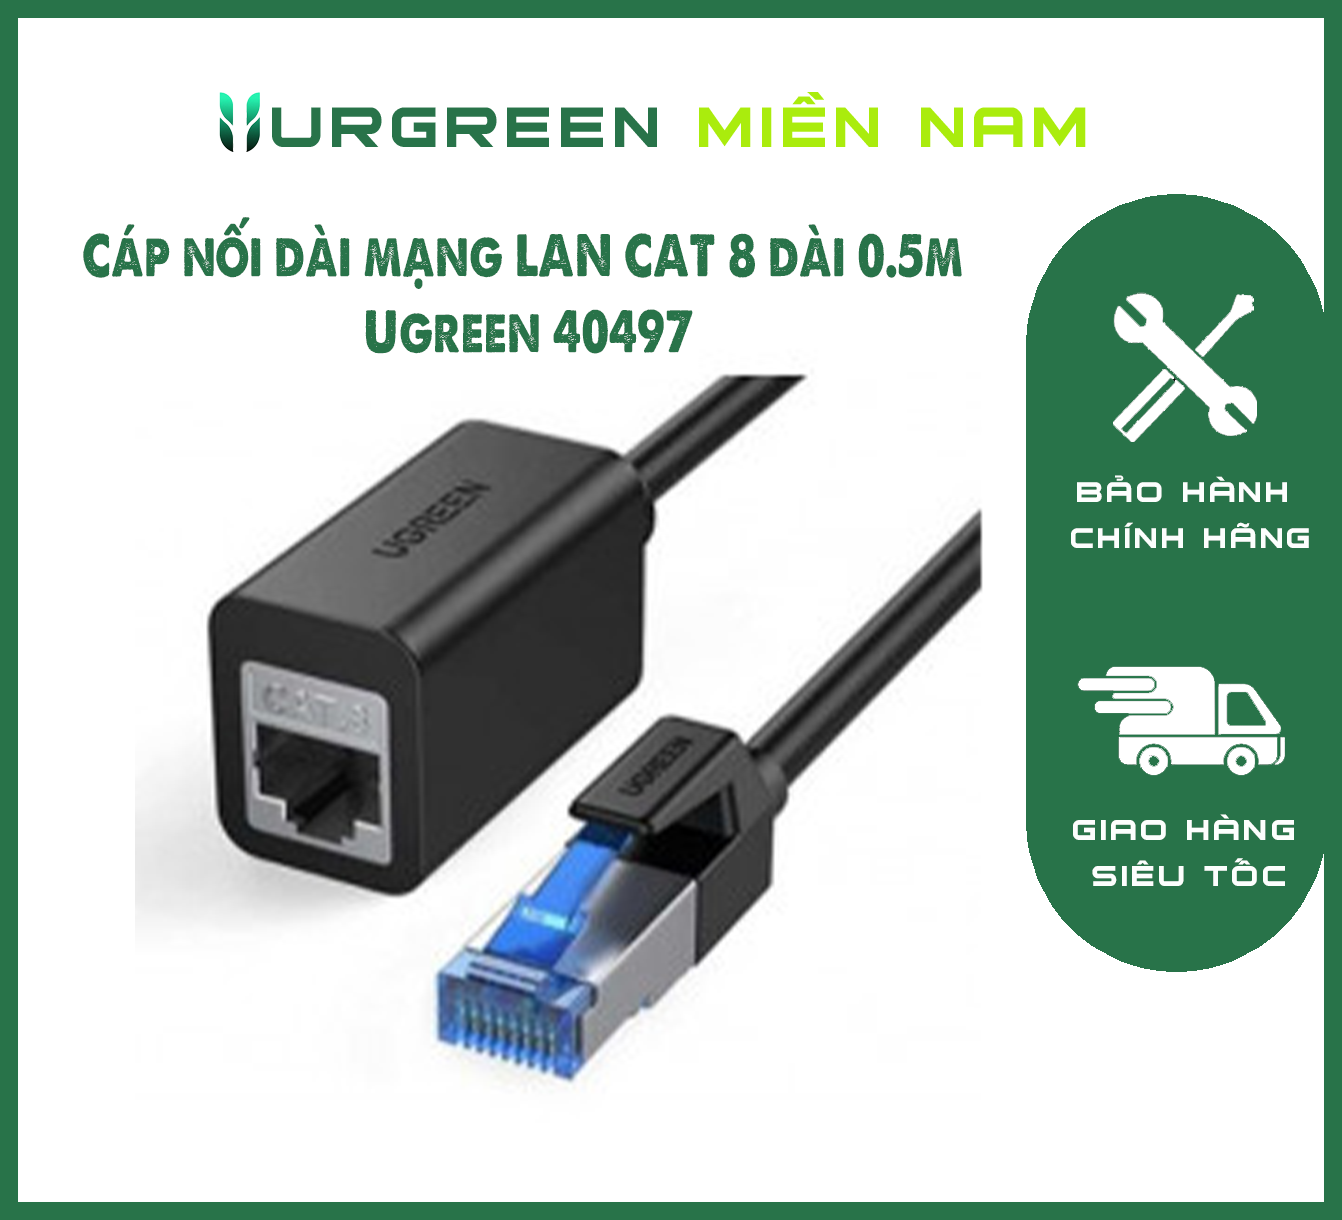 Cáp nối dài mạng LAN CAT 8 dài 0.5m Ugreen 40497